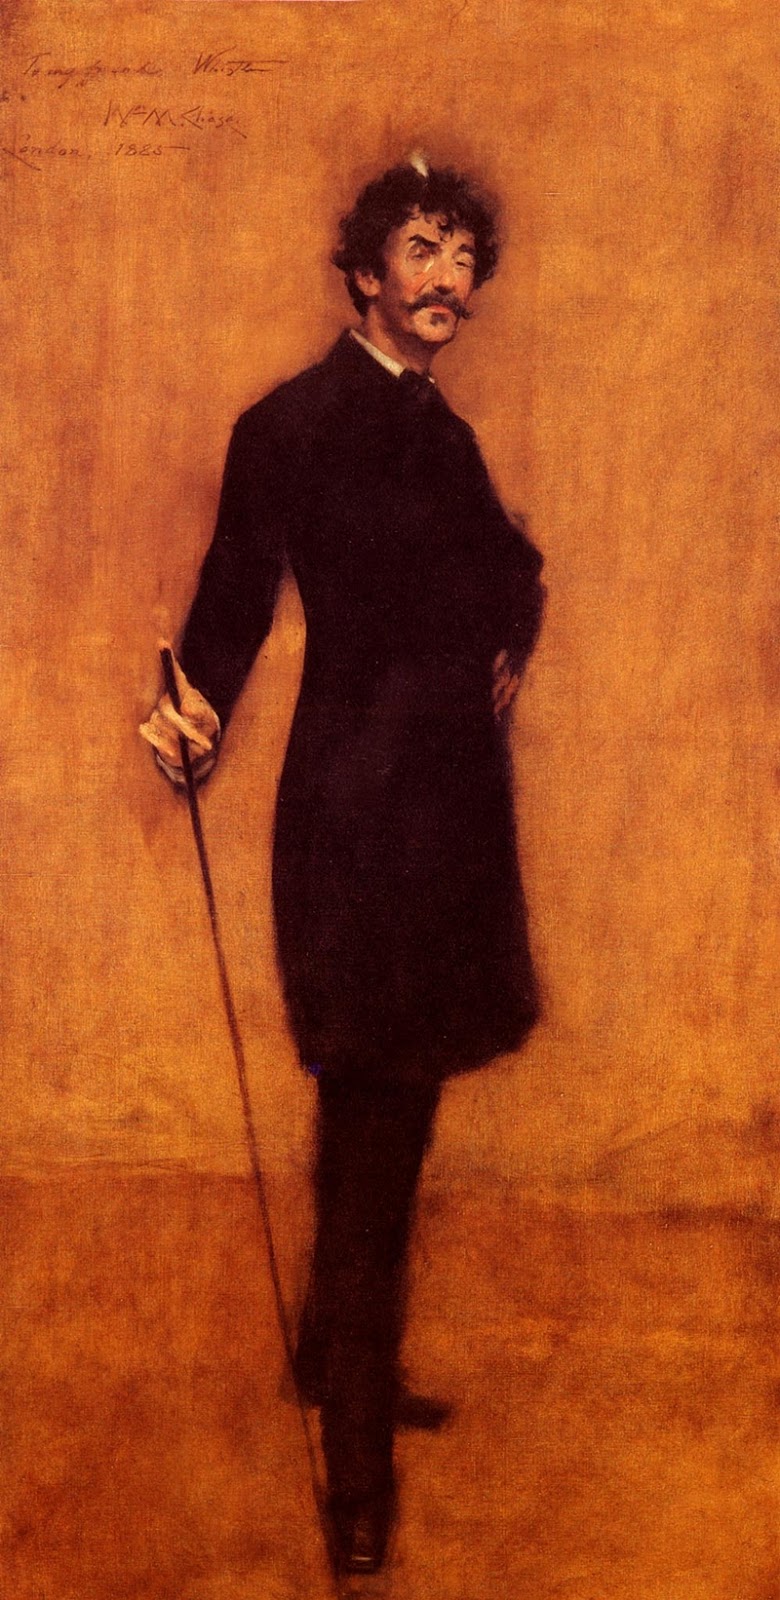 James+Abbott+McNeill+Whistler-1834-1903 (51).jpg